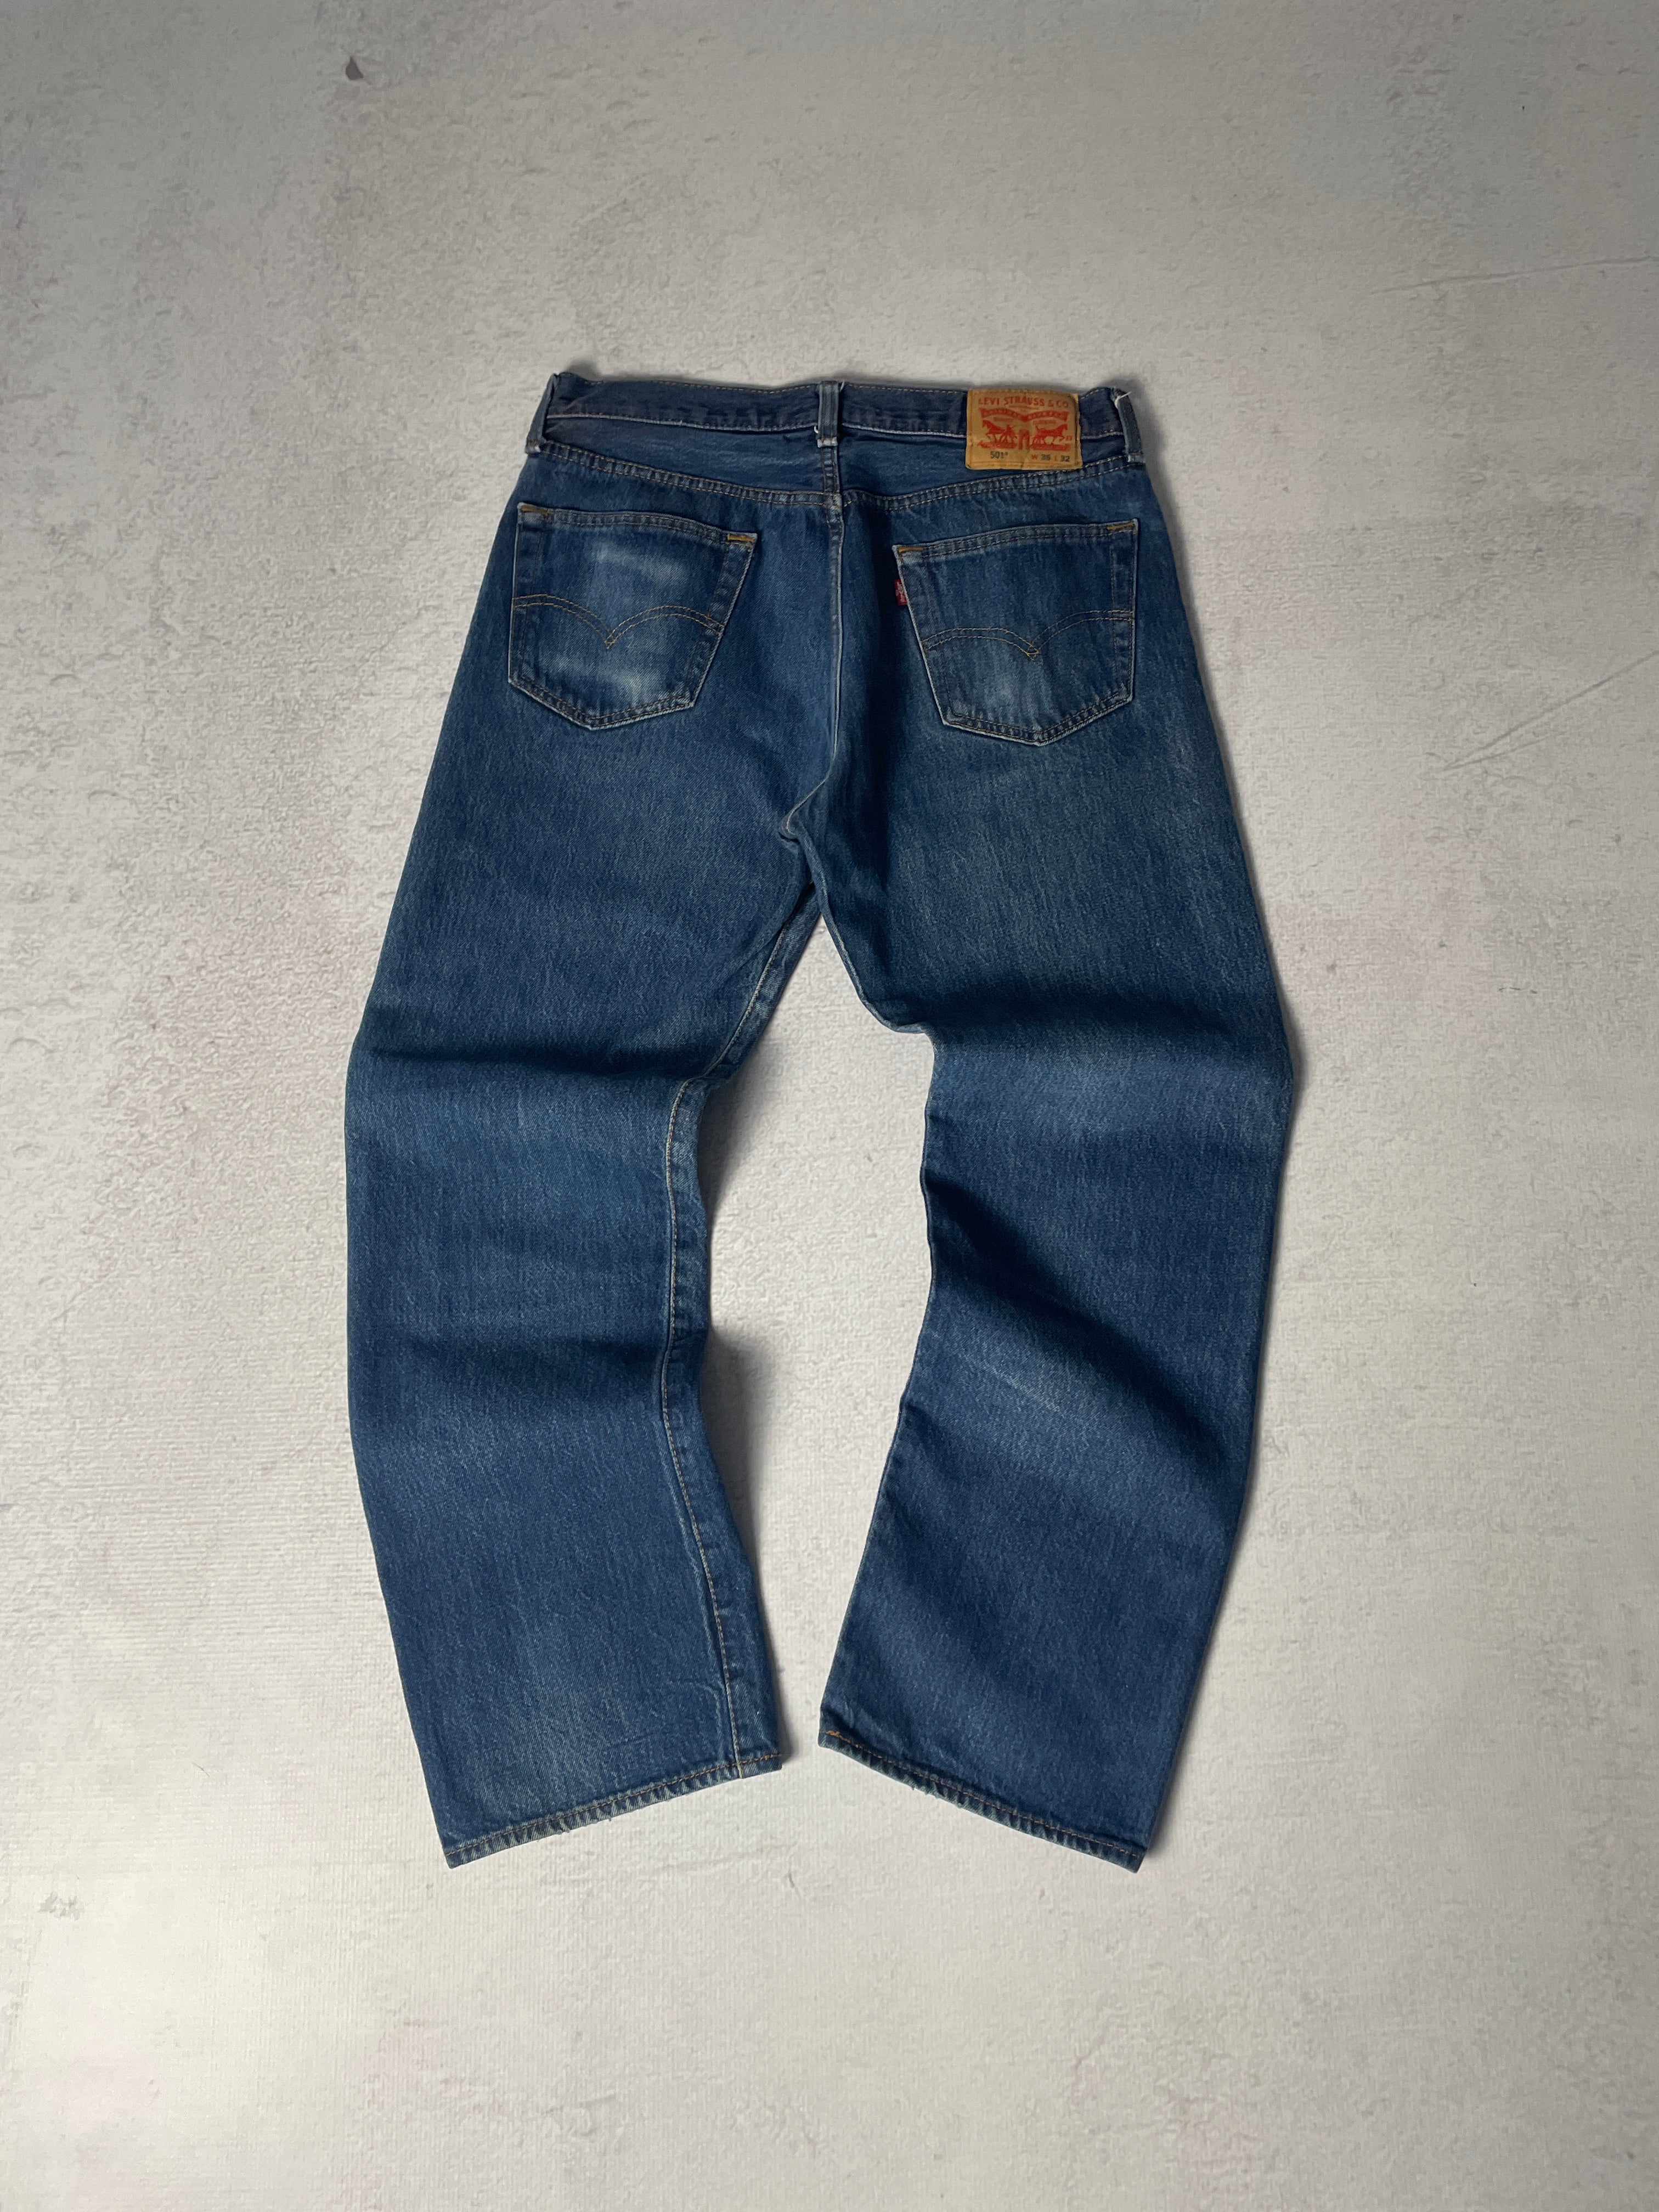 Vintage Bleached Levis 501 Jeans - Men's 35Wx32L